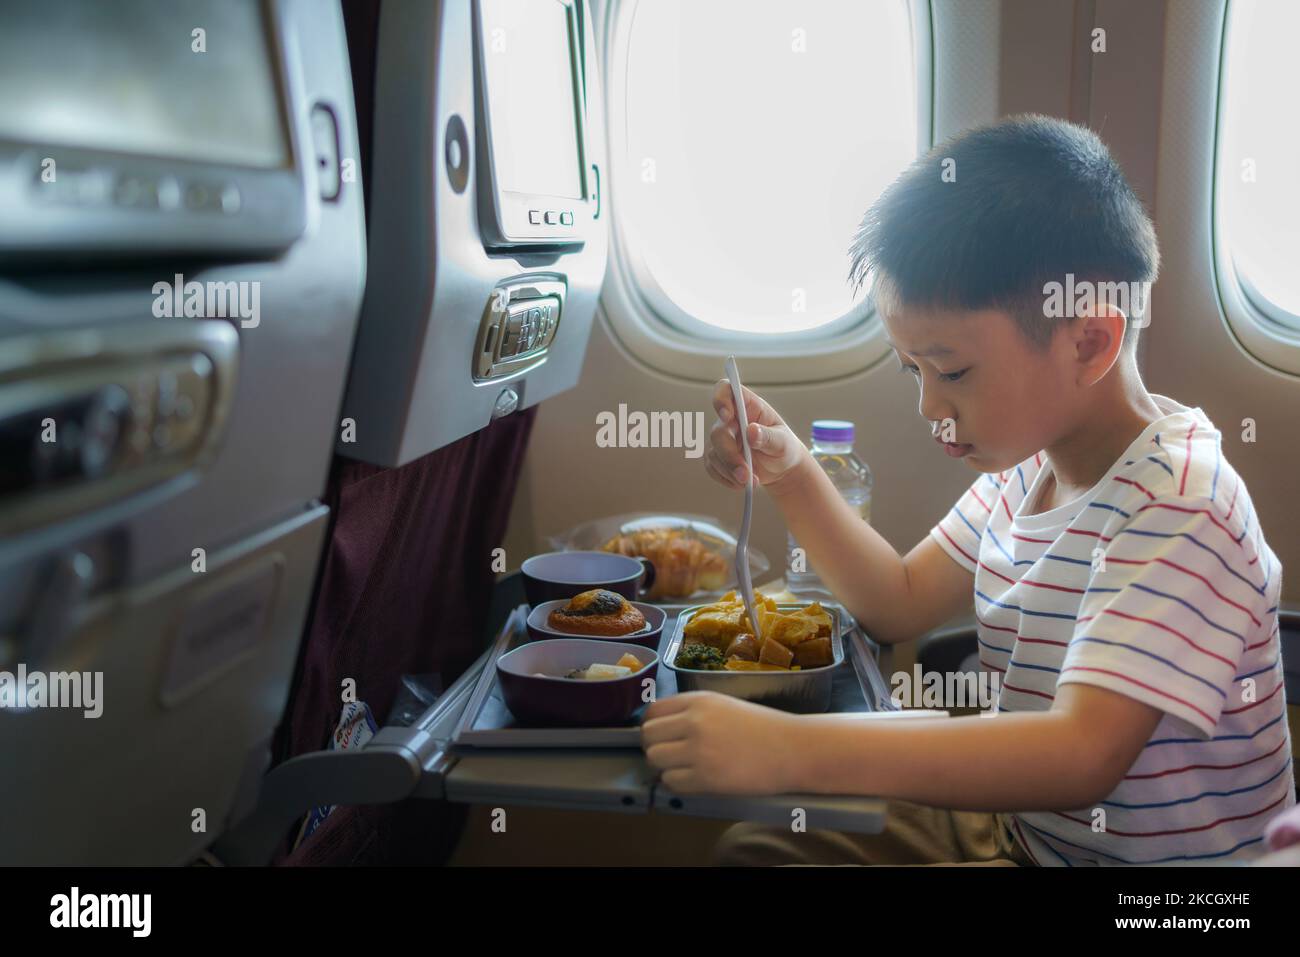 Asiatisches Kind auf dem Fenstersitz des Flugzeugs. Kinderflugmahlzeit. Kinder fliegen. Spezielles Bordmenü, Speisen und Getränke für Baby und Kind. Junge, der gesundes Mittagessen isst Stockfoto